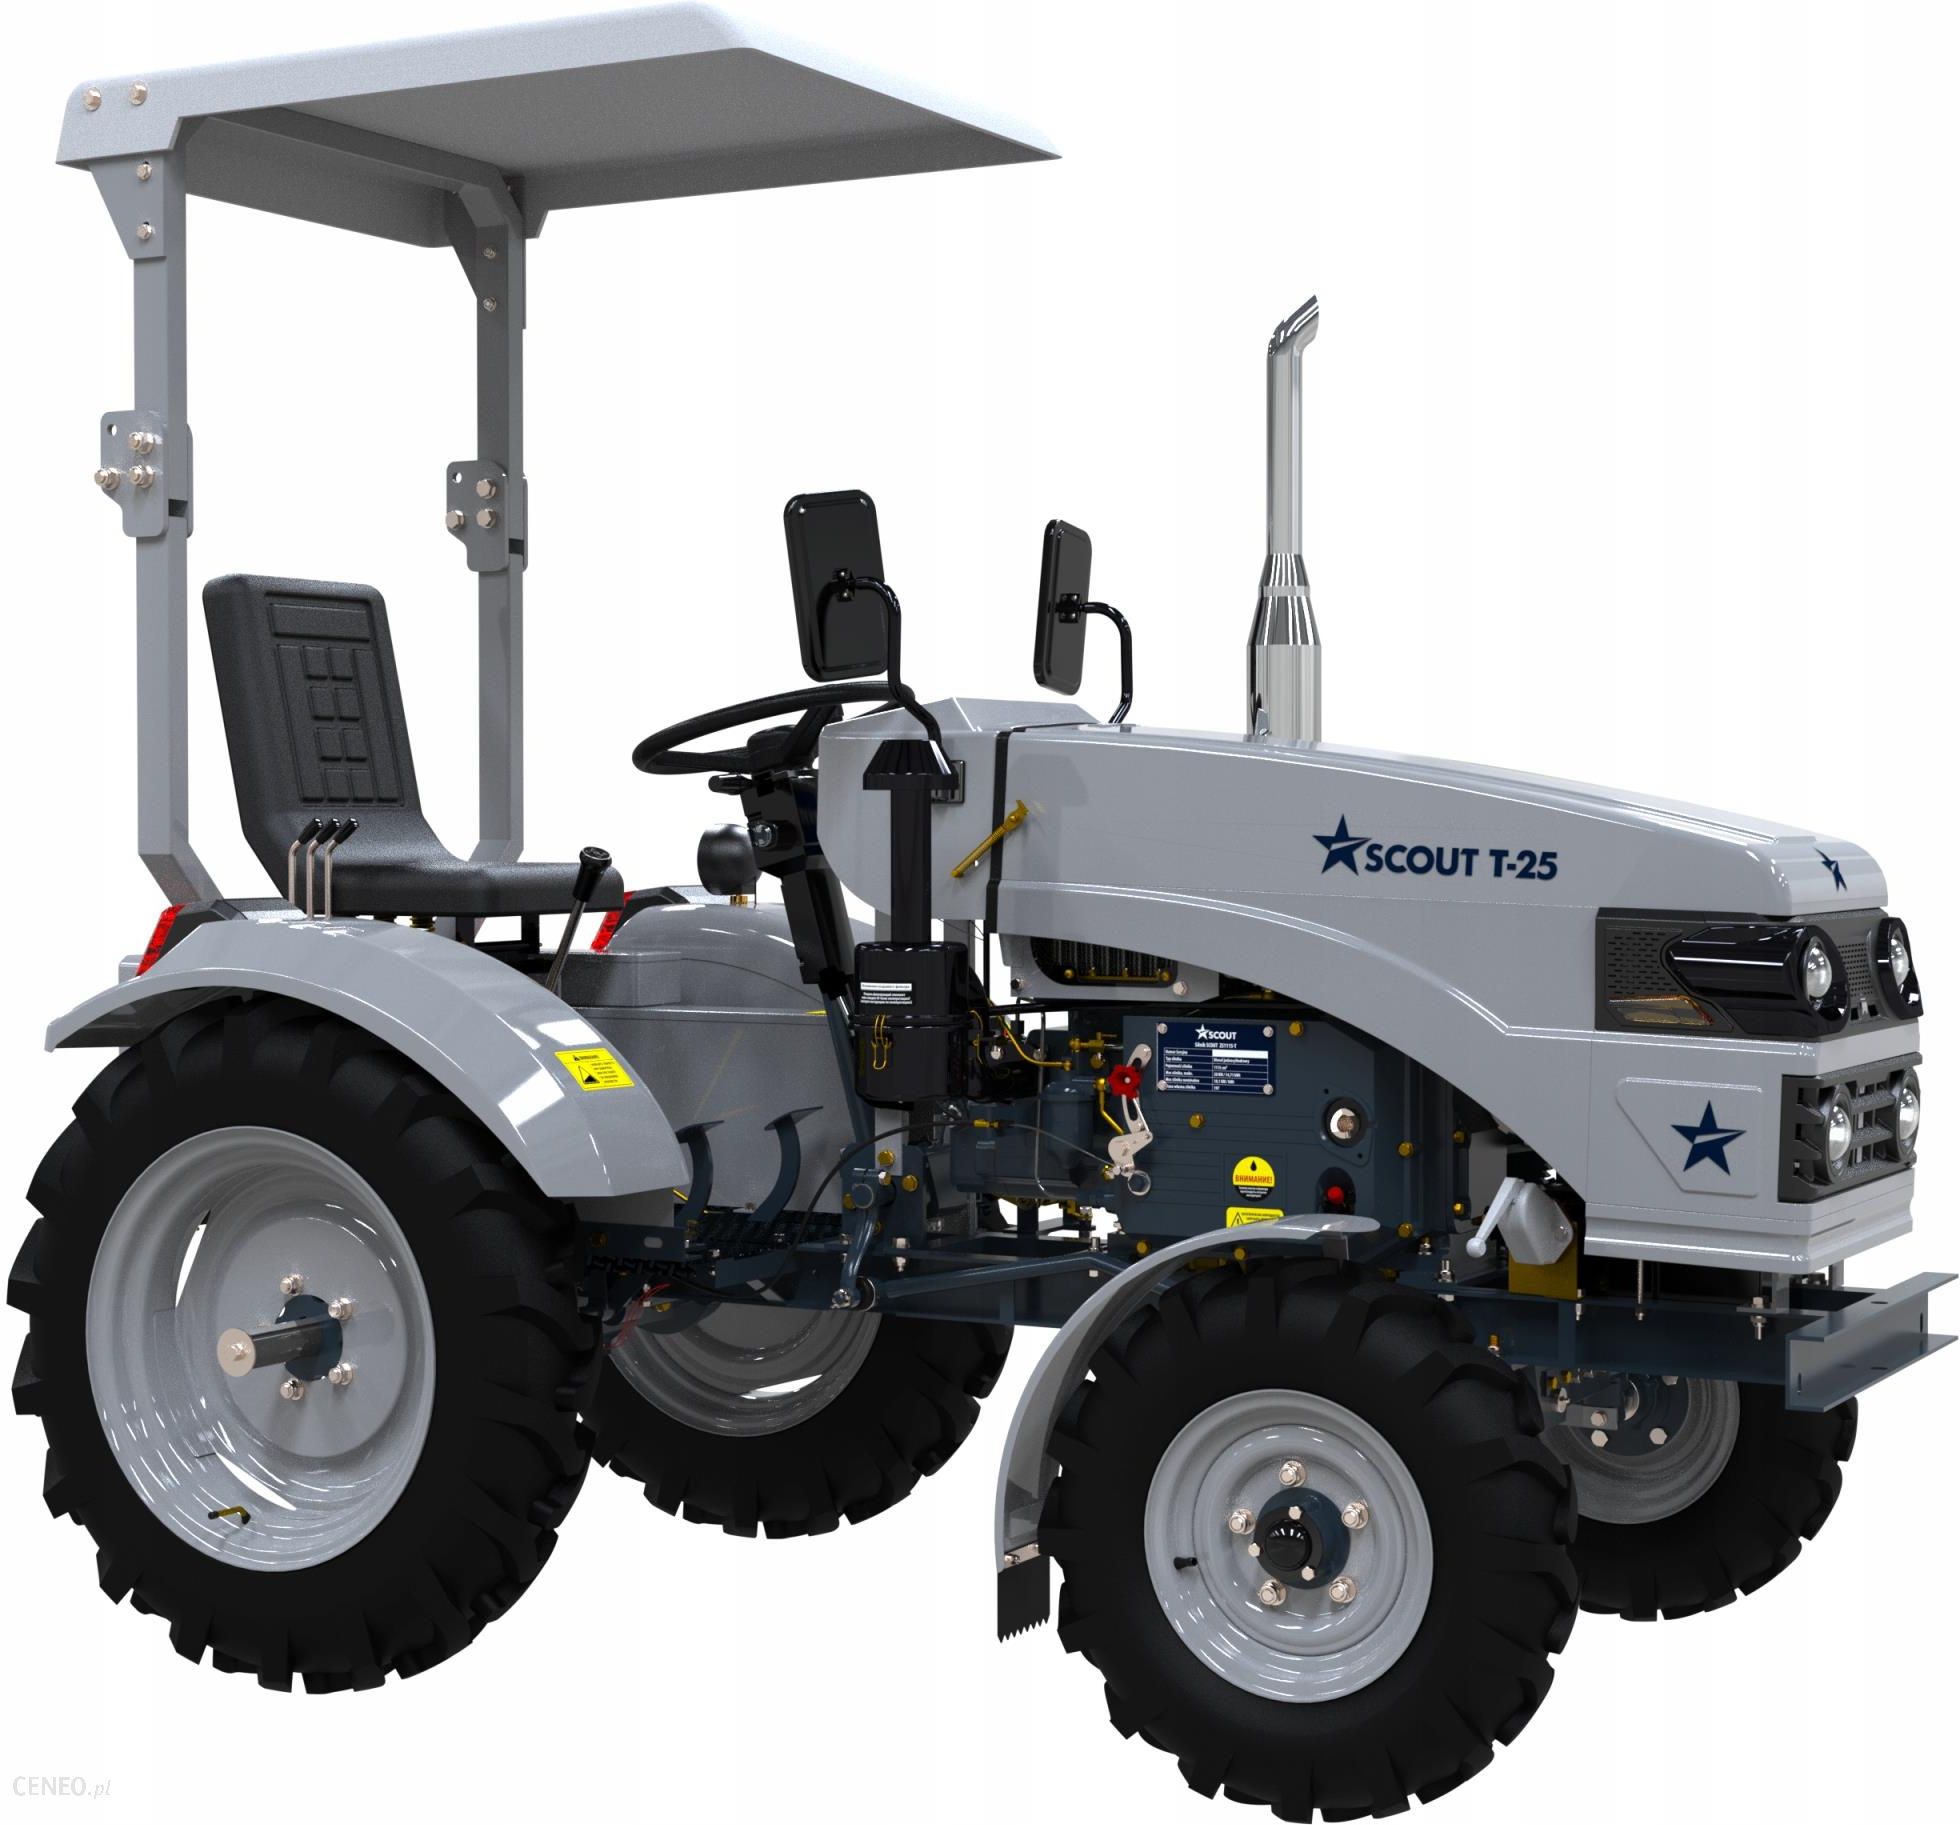 Mini Traktor Scout T 25 Opinie I Ceny Na Ceneo Pl